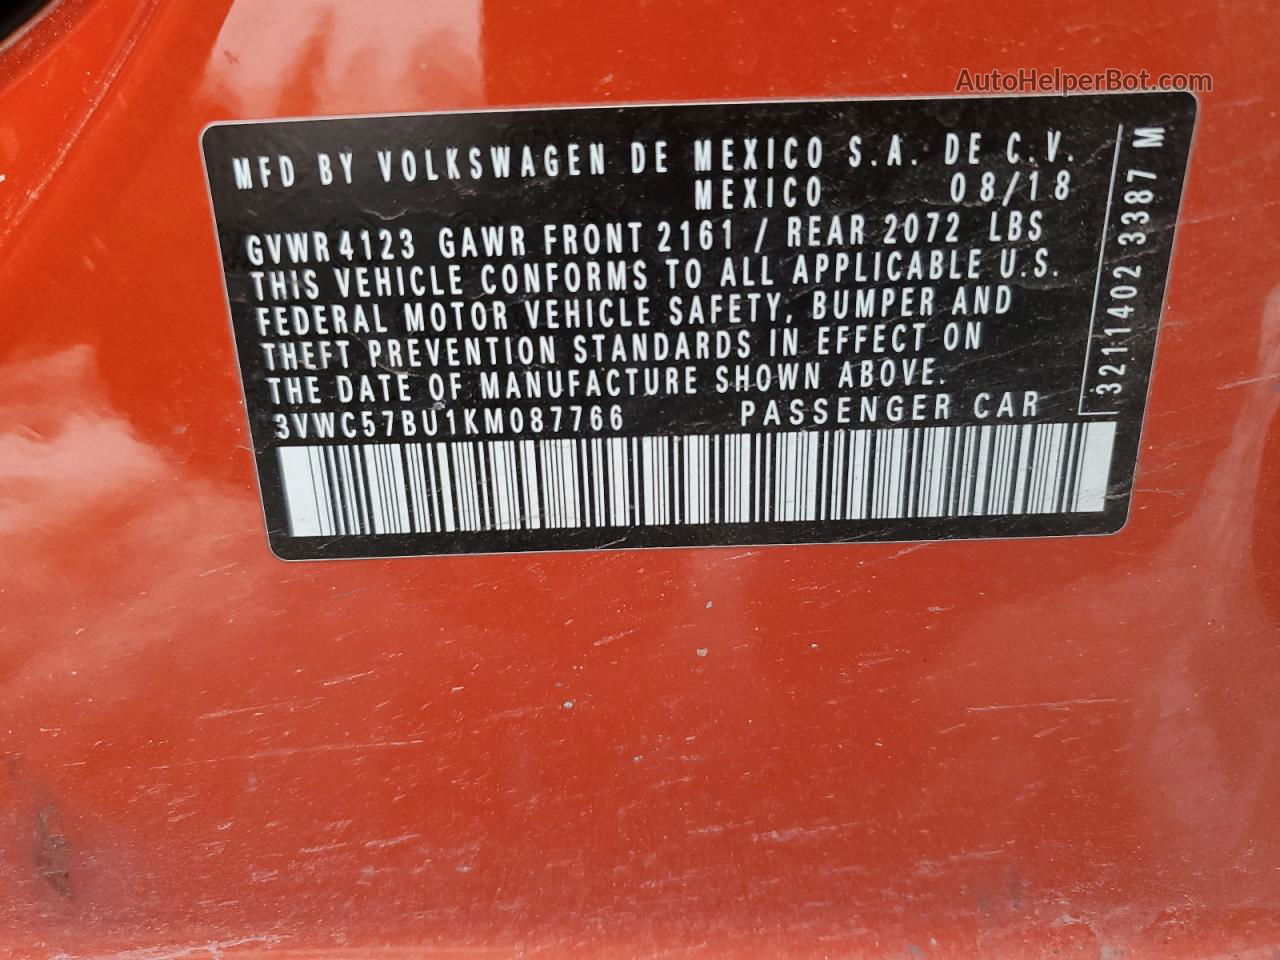 2019 Volkswagen Jetta S Orange vin: 3VWC57BU1KM087766